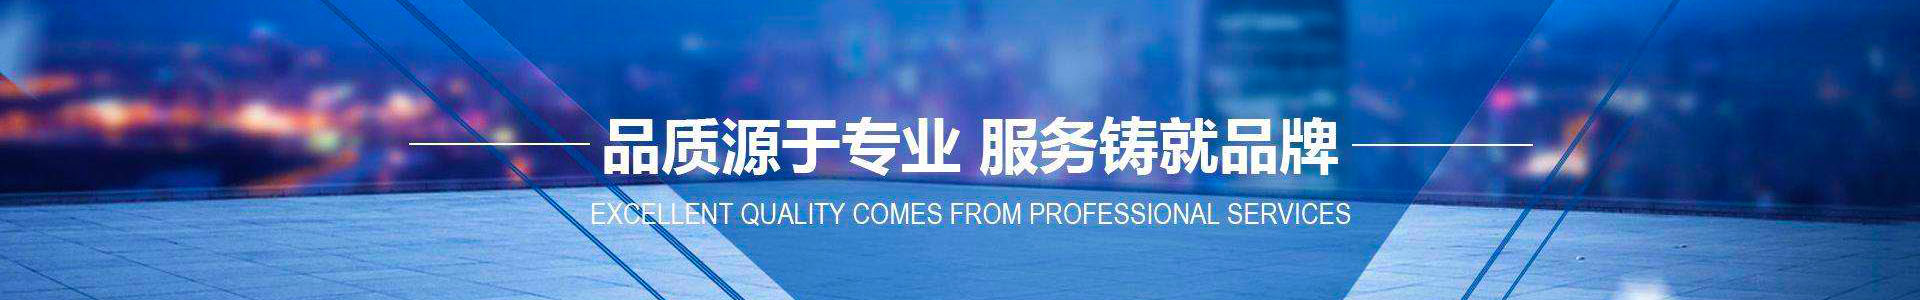 公司简介-滨州市全网担保网自动化设备有限公司